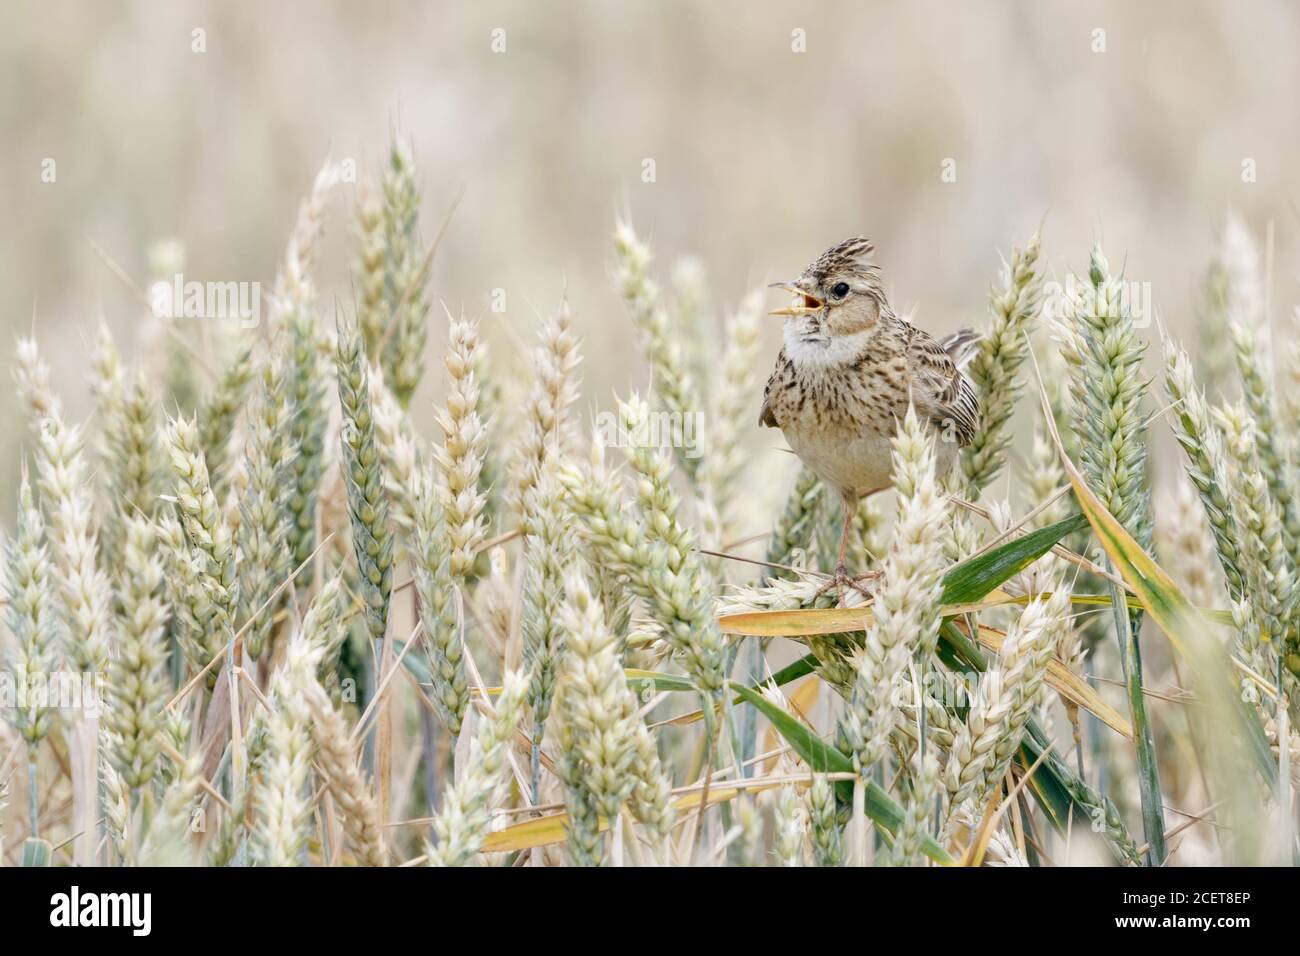 Skylark ( Alauda arvensis ) Gesang in einem Weizenfeld, auf Weizenpflanzen, angehoben Kamm, typisch songbird von offenem Land, Tierwelt, Europa. Stockfoto